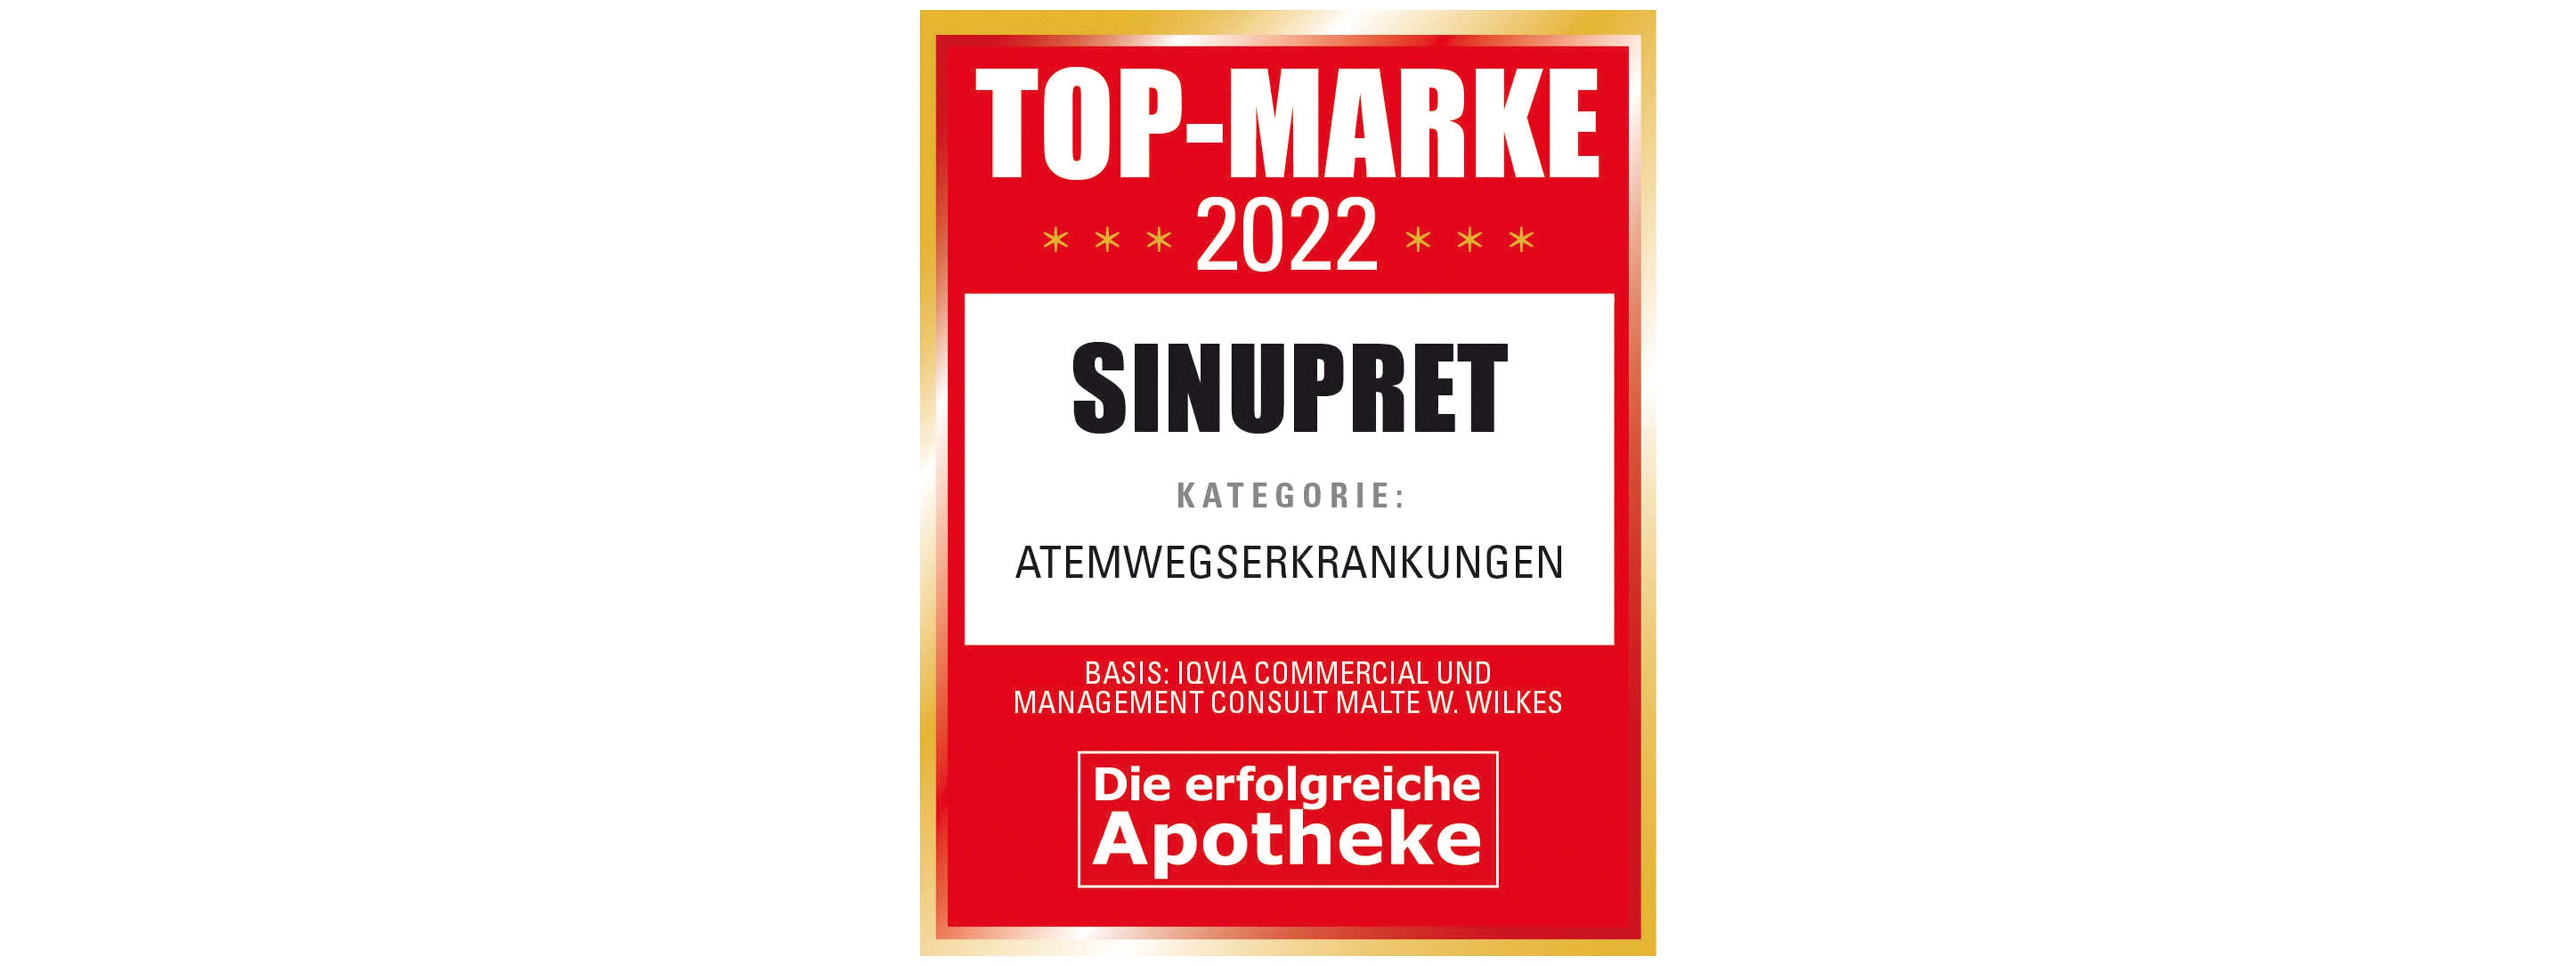 TOP-Marke 2022 Sinupret